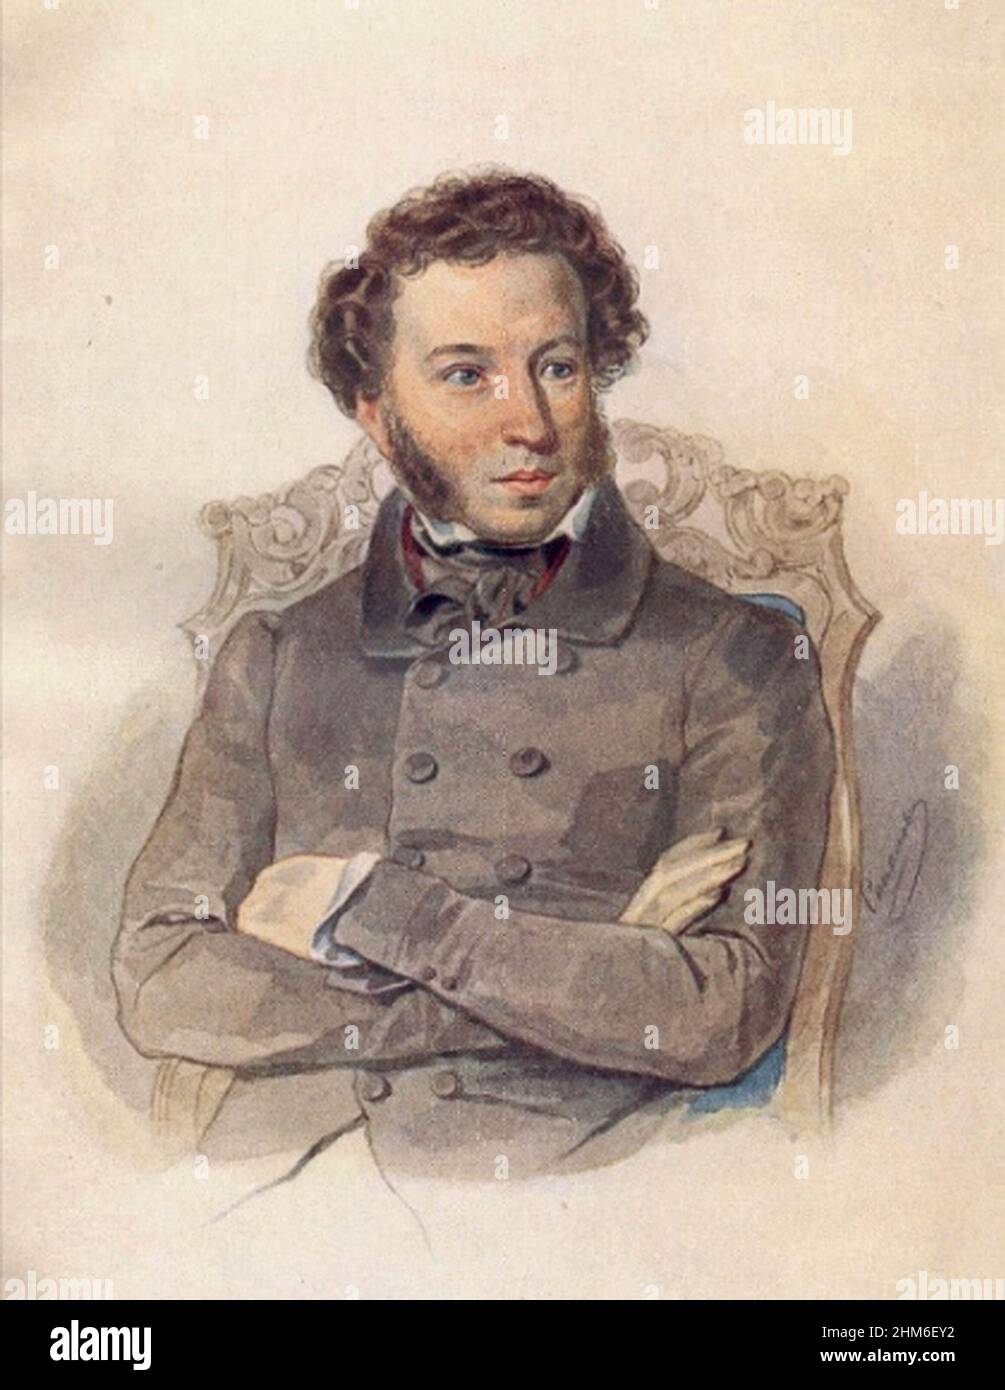 Ein Porträt des russischen Schriftstellers Alexander Puschkin, Autor von Eugene Onegin, von 1836, als er 37 Jahre alt war. Stockfoto